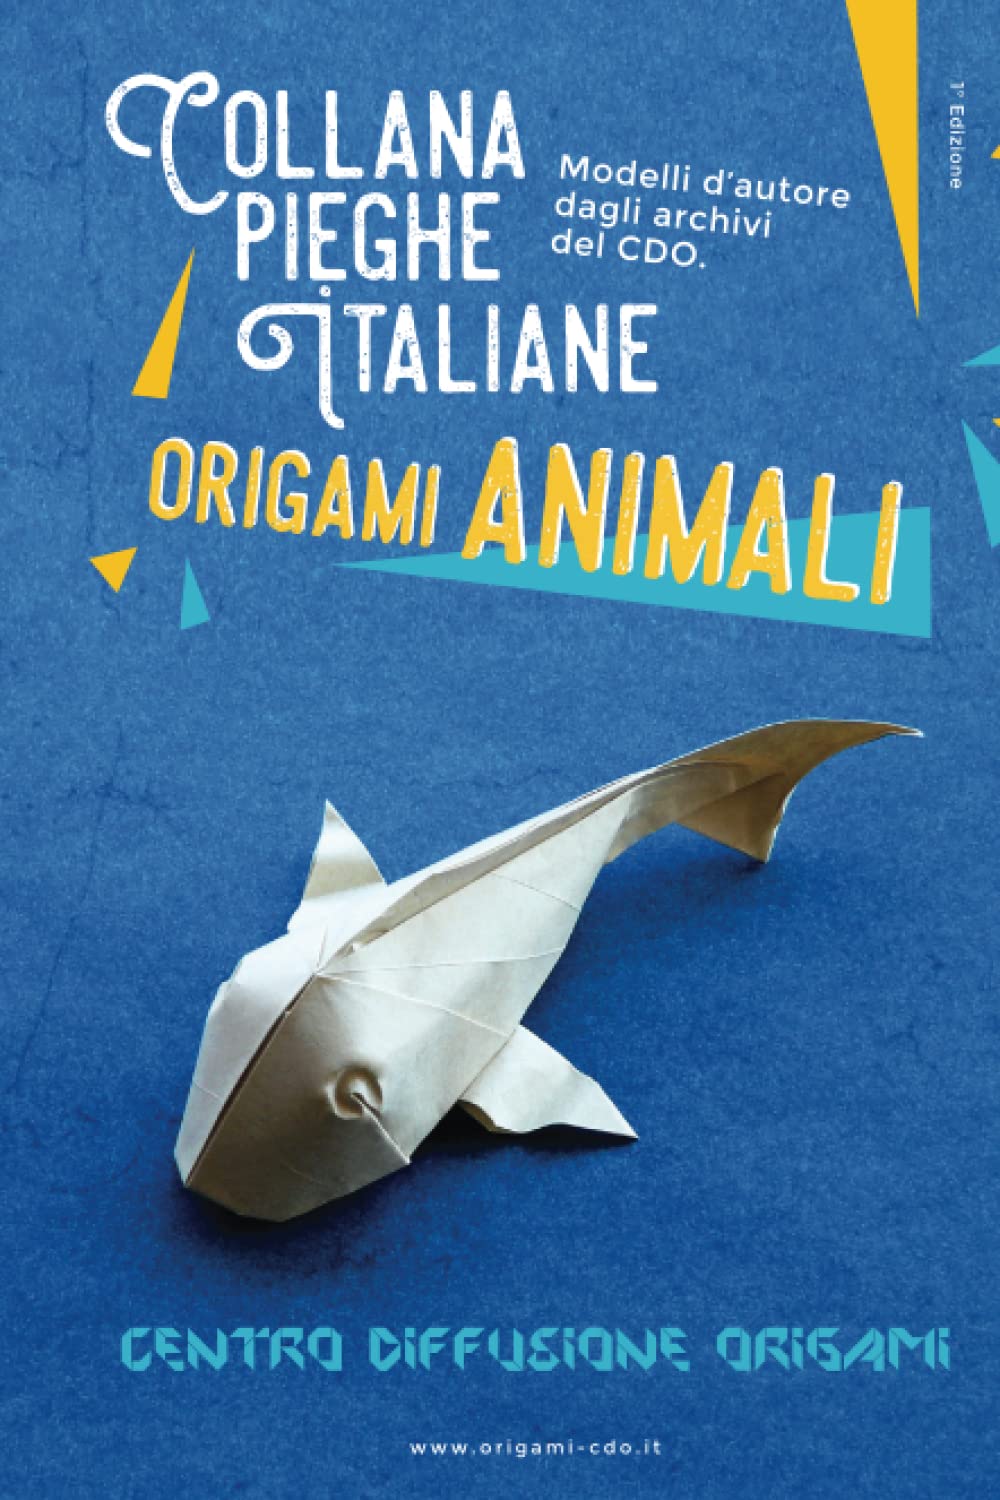 Collana pieghe Italiane - origami ANIMALI : page 74.